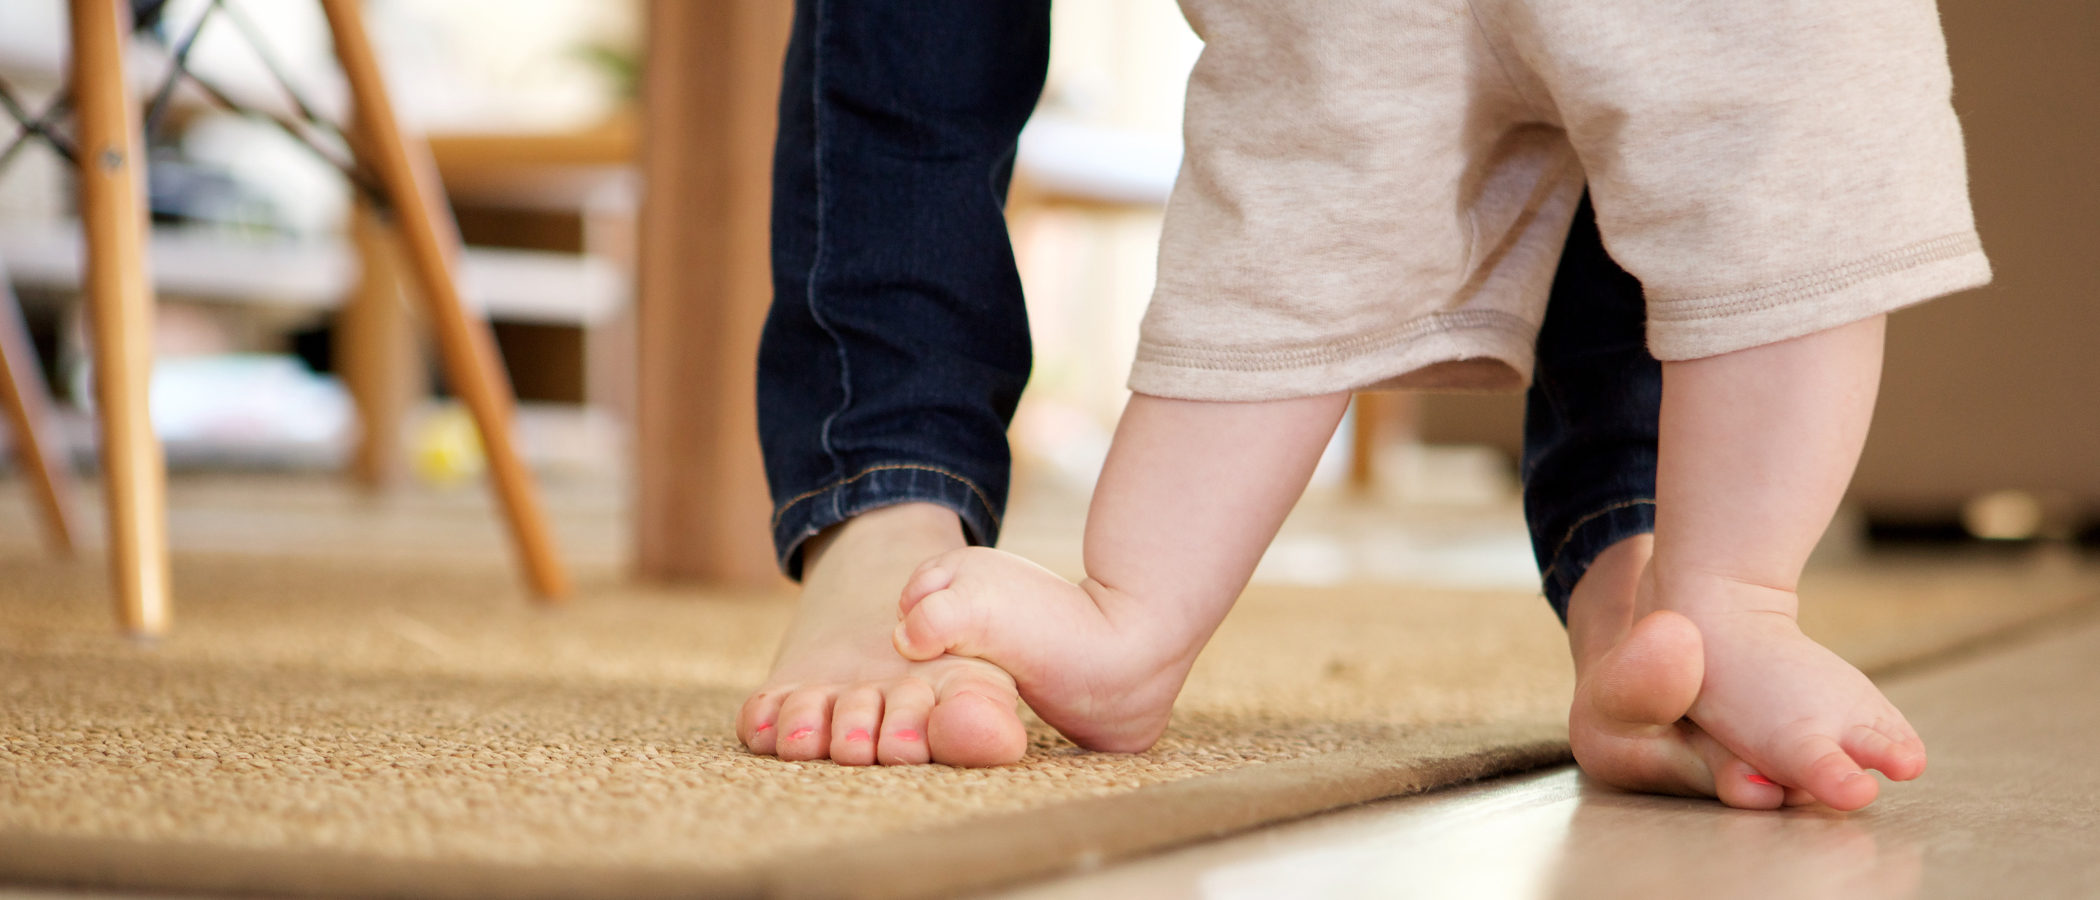 Por qué es bueno que los niños pequeños anden descalzos por casa